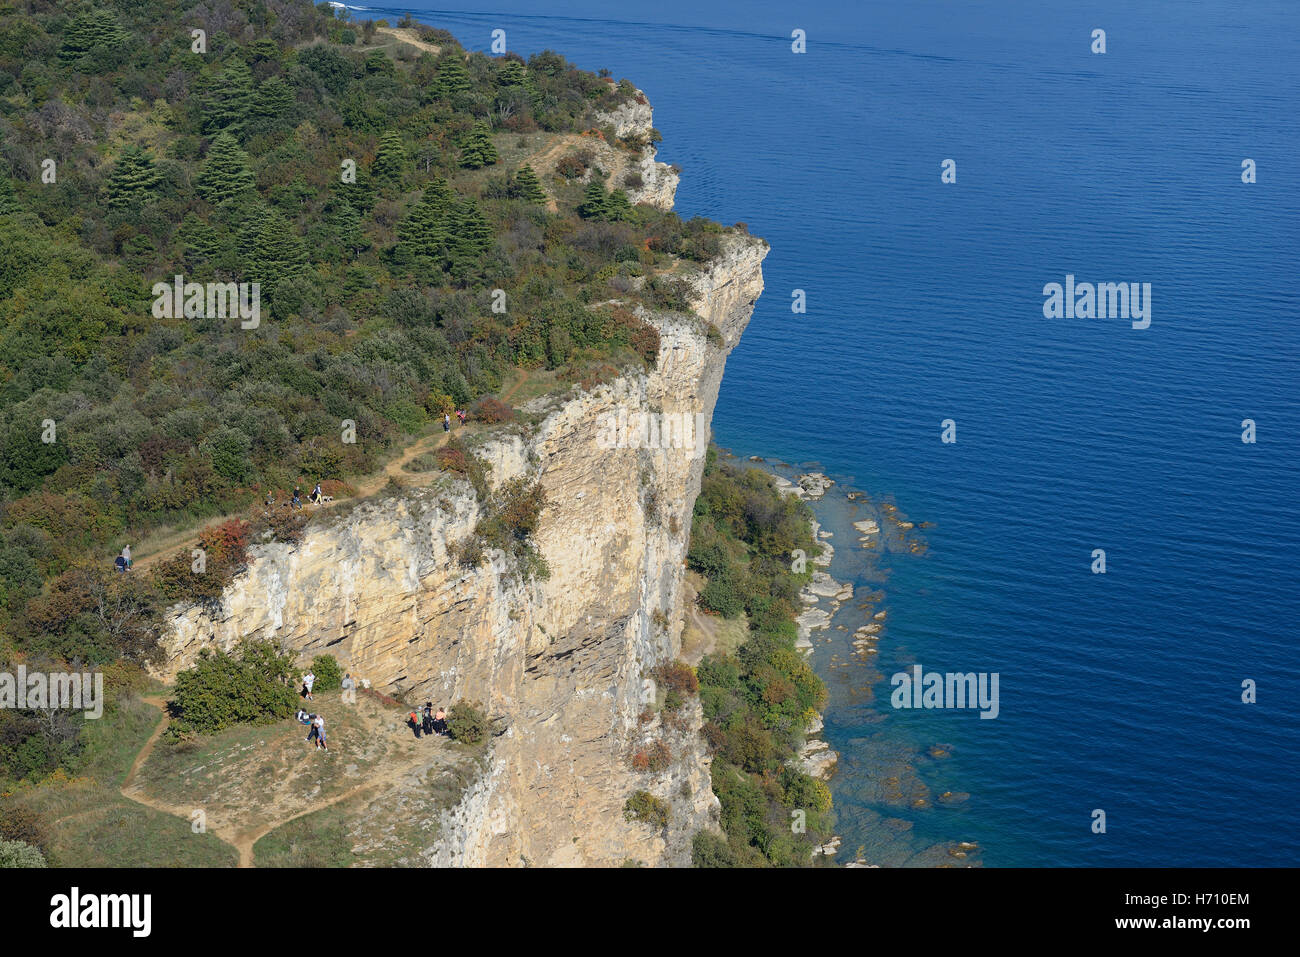 VISTA AEREA. I turisti si possono ammirare su una scogliera che sovrasta il Lago di Garda. Rocca di Manerba, Manerba del Garda, Provincia di Brescia, Lombardia, Italia. Foto Stock